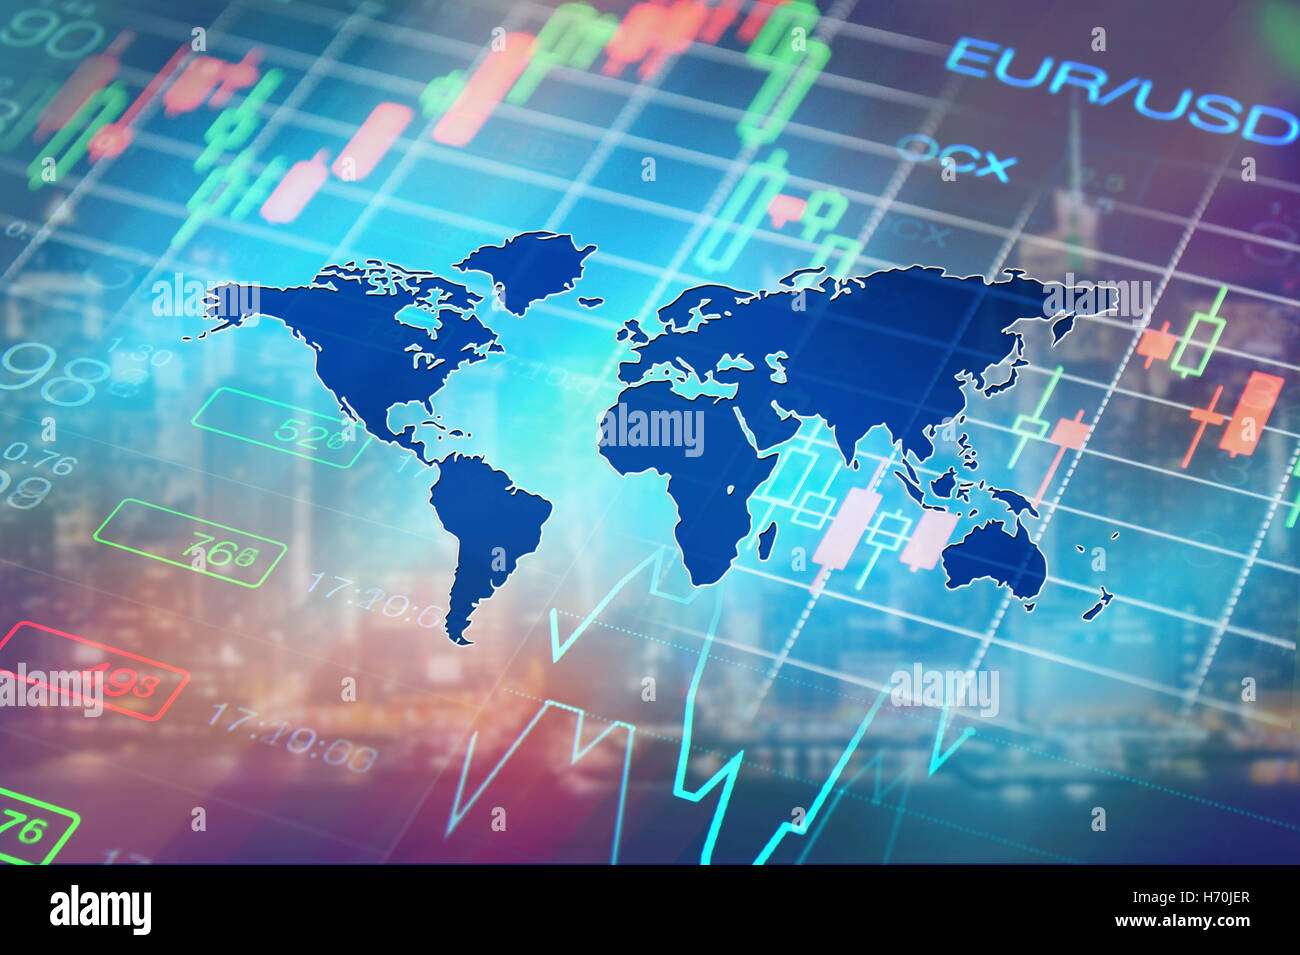 Globale Wirtschaft, Finanzen, Forex, Finanzmärkte Nachrichten Hintergrund Stockfoto